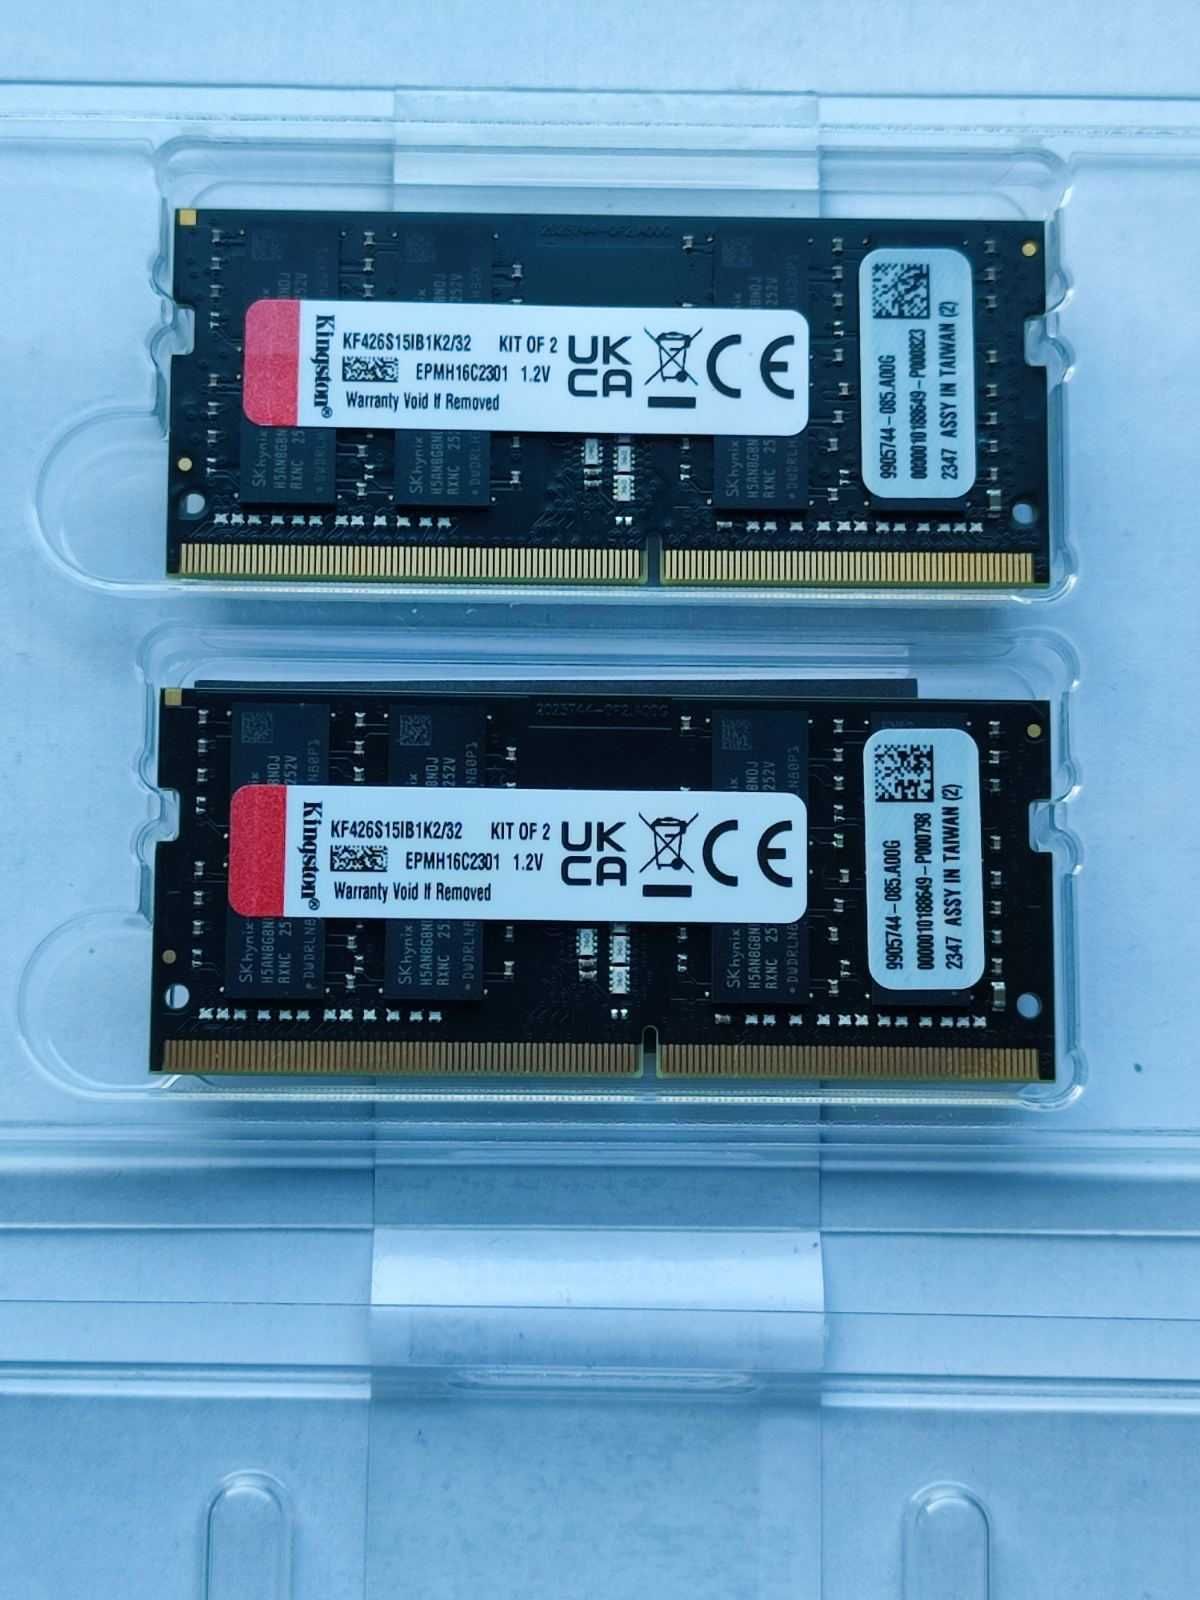 ОЗУ SODIMM DDR4 Hynix 16Gb (2x8), SODIMM DDR4 Kingston 32Gb (2x16)